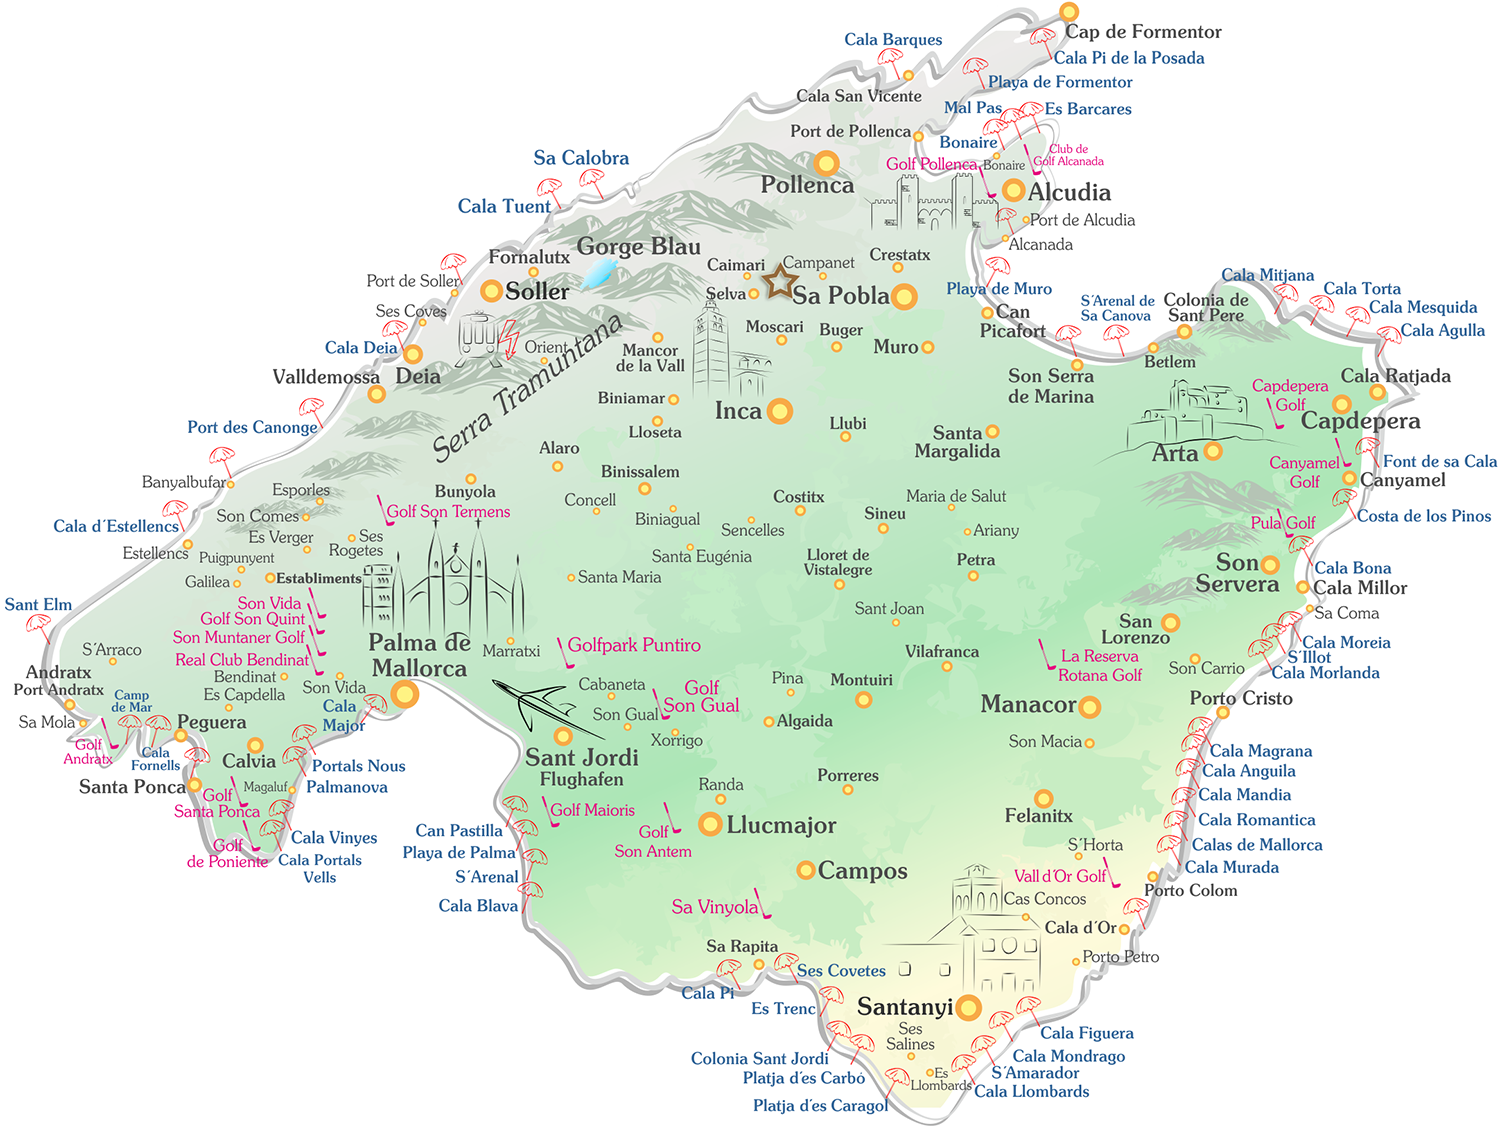 Campanet auf der Mallorca Karte